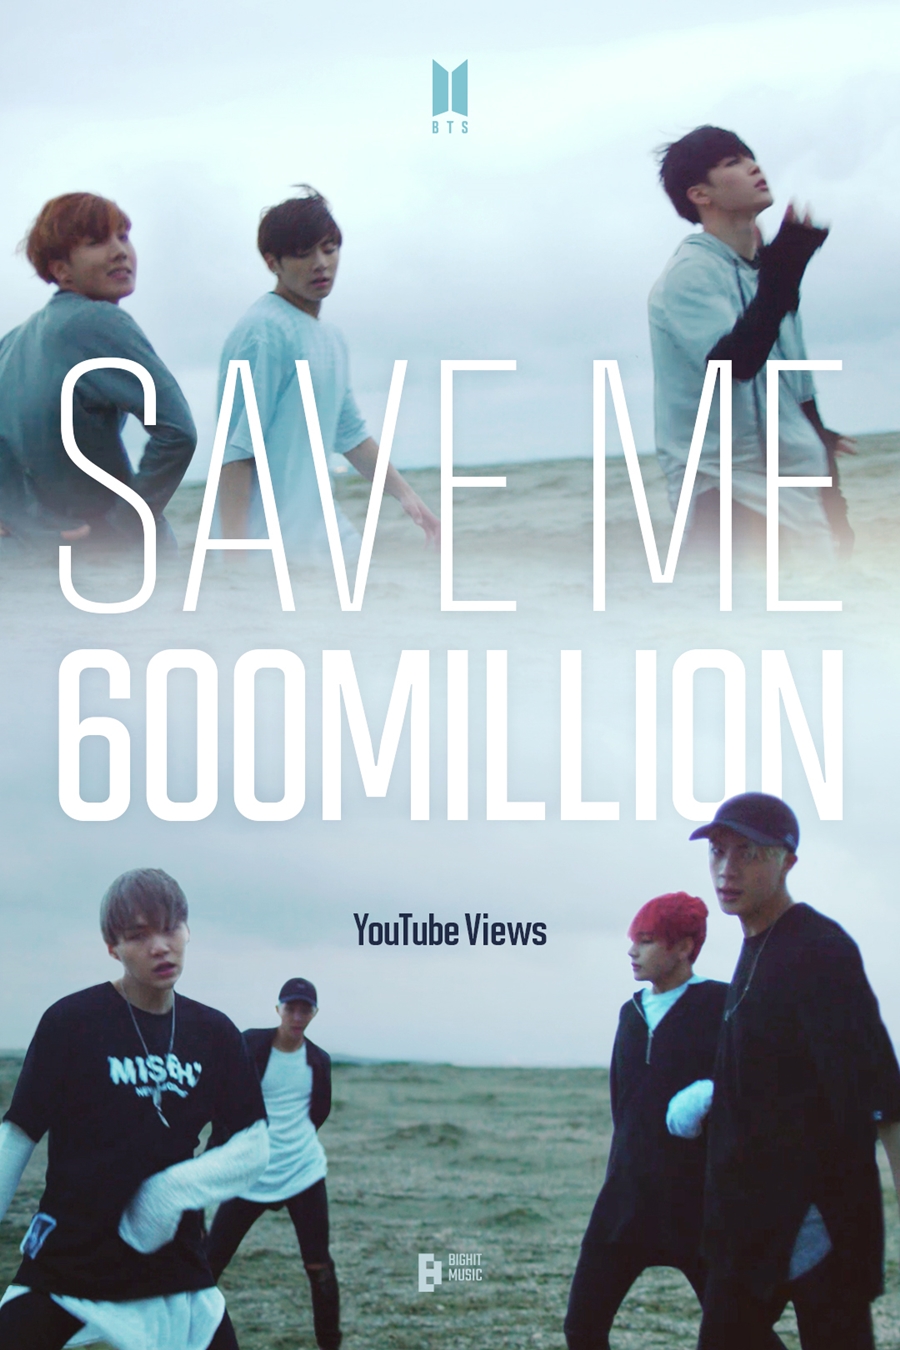 방탄소년단 'Save ME' MV, 6억뷰 돌파…통산 10번째 기록